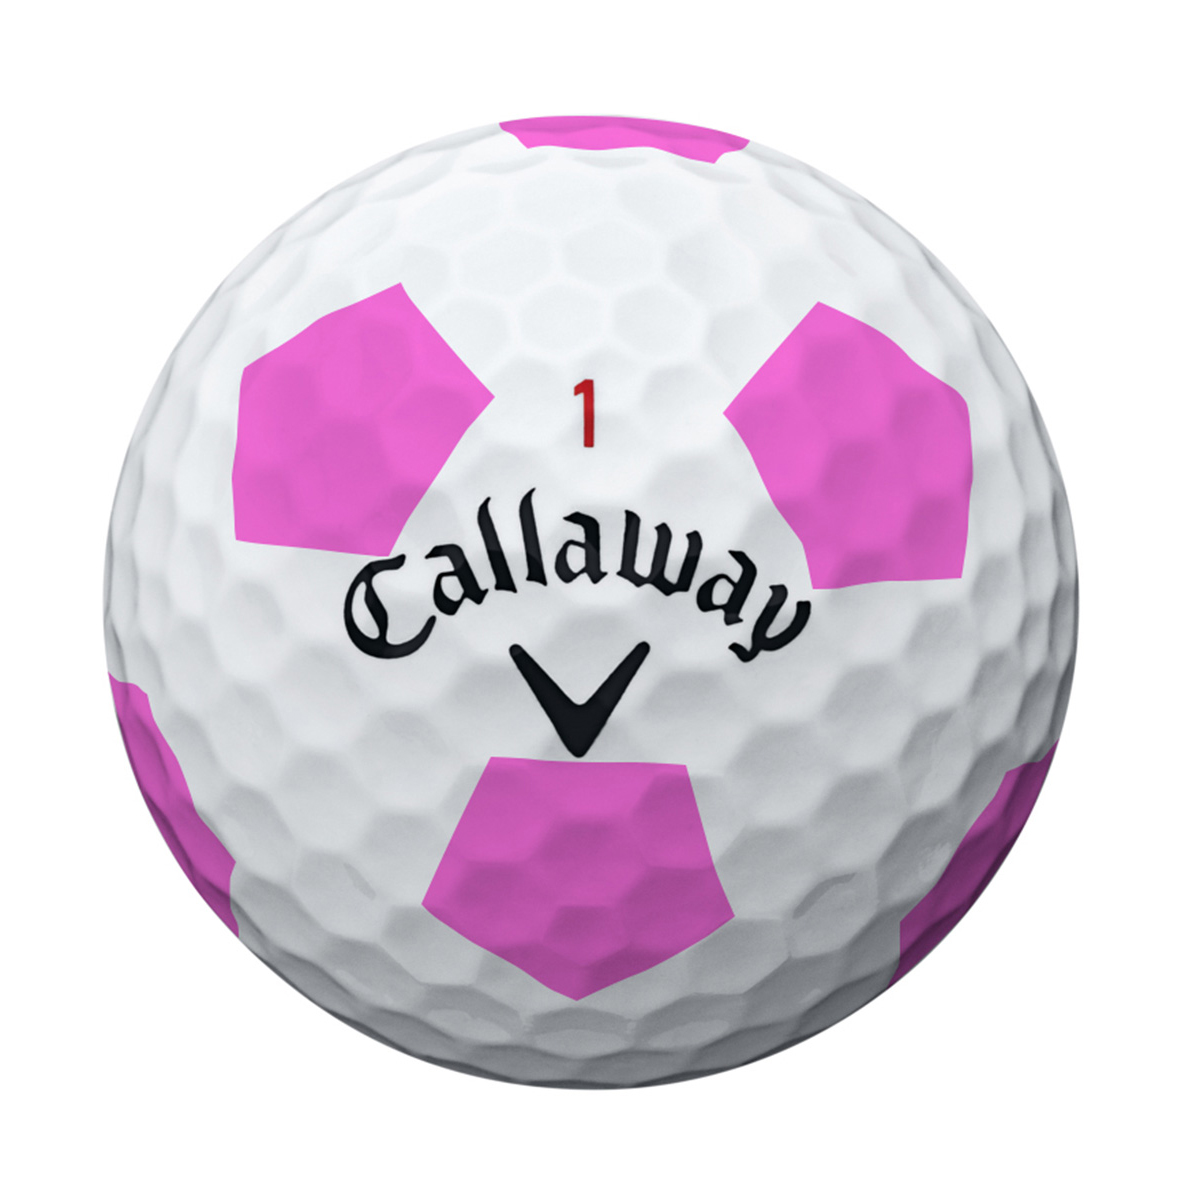 Callaway мяч для гольфа. Мяч для гольфа PNG. Суфле мячики гольф. Callaway Golf PNG. Reddit balls